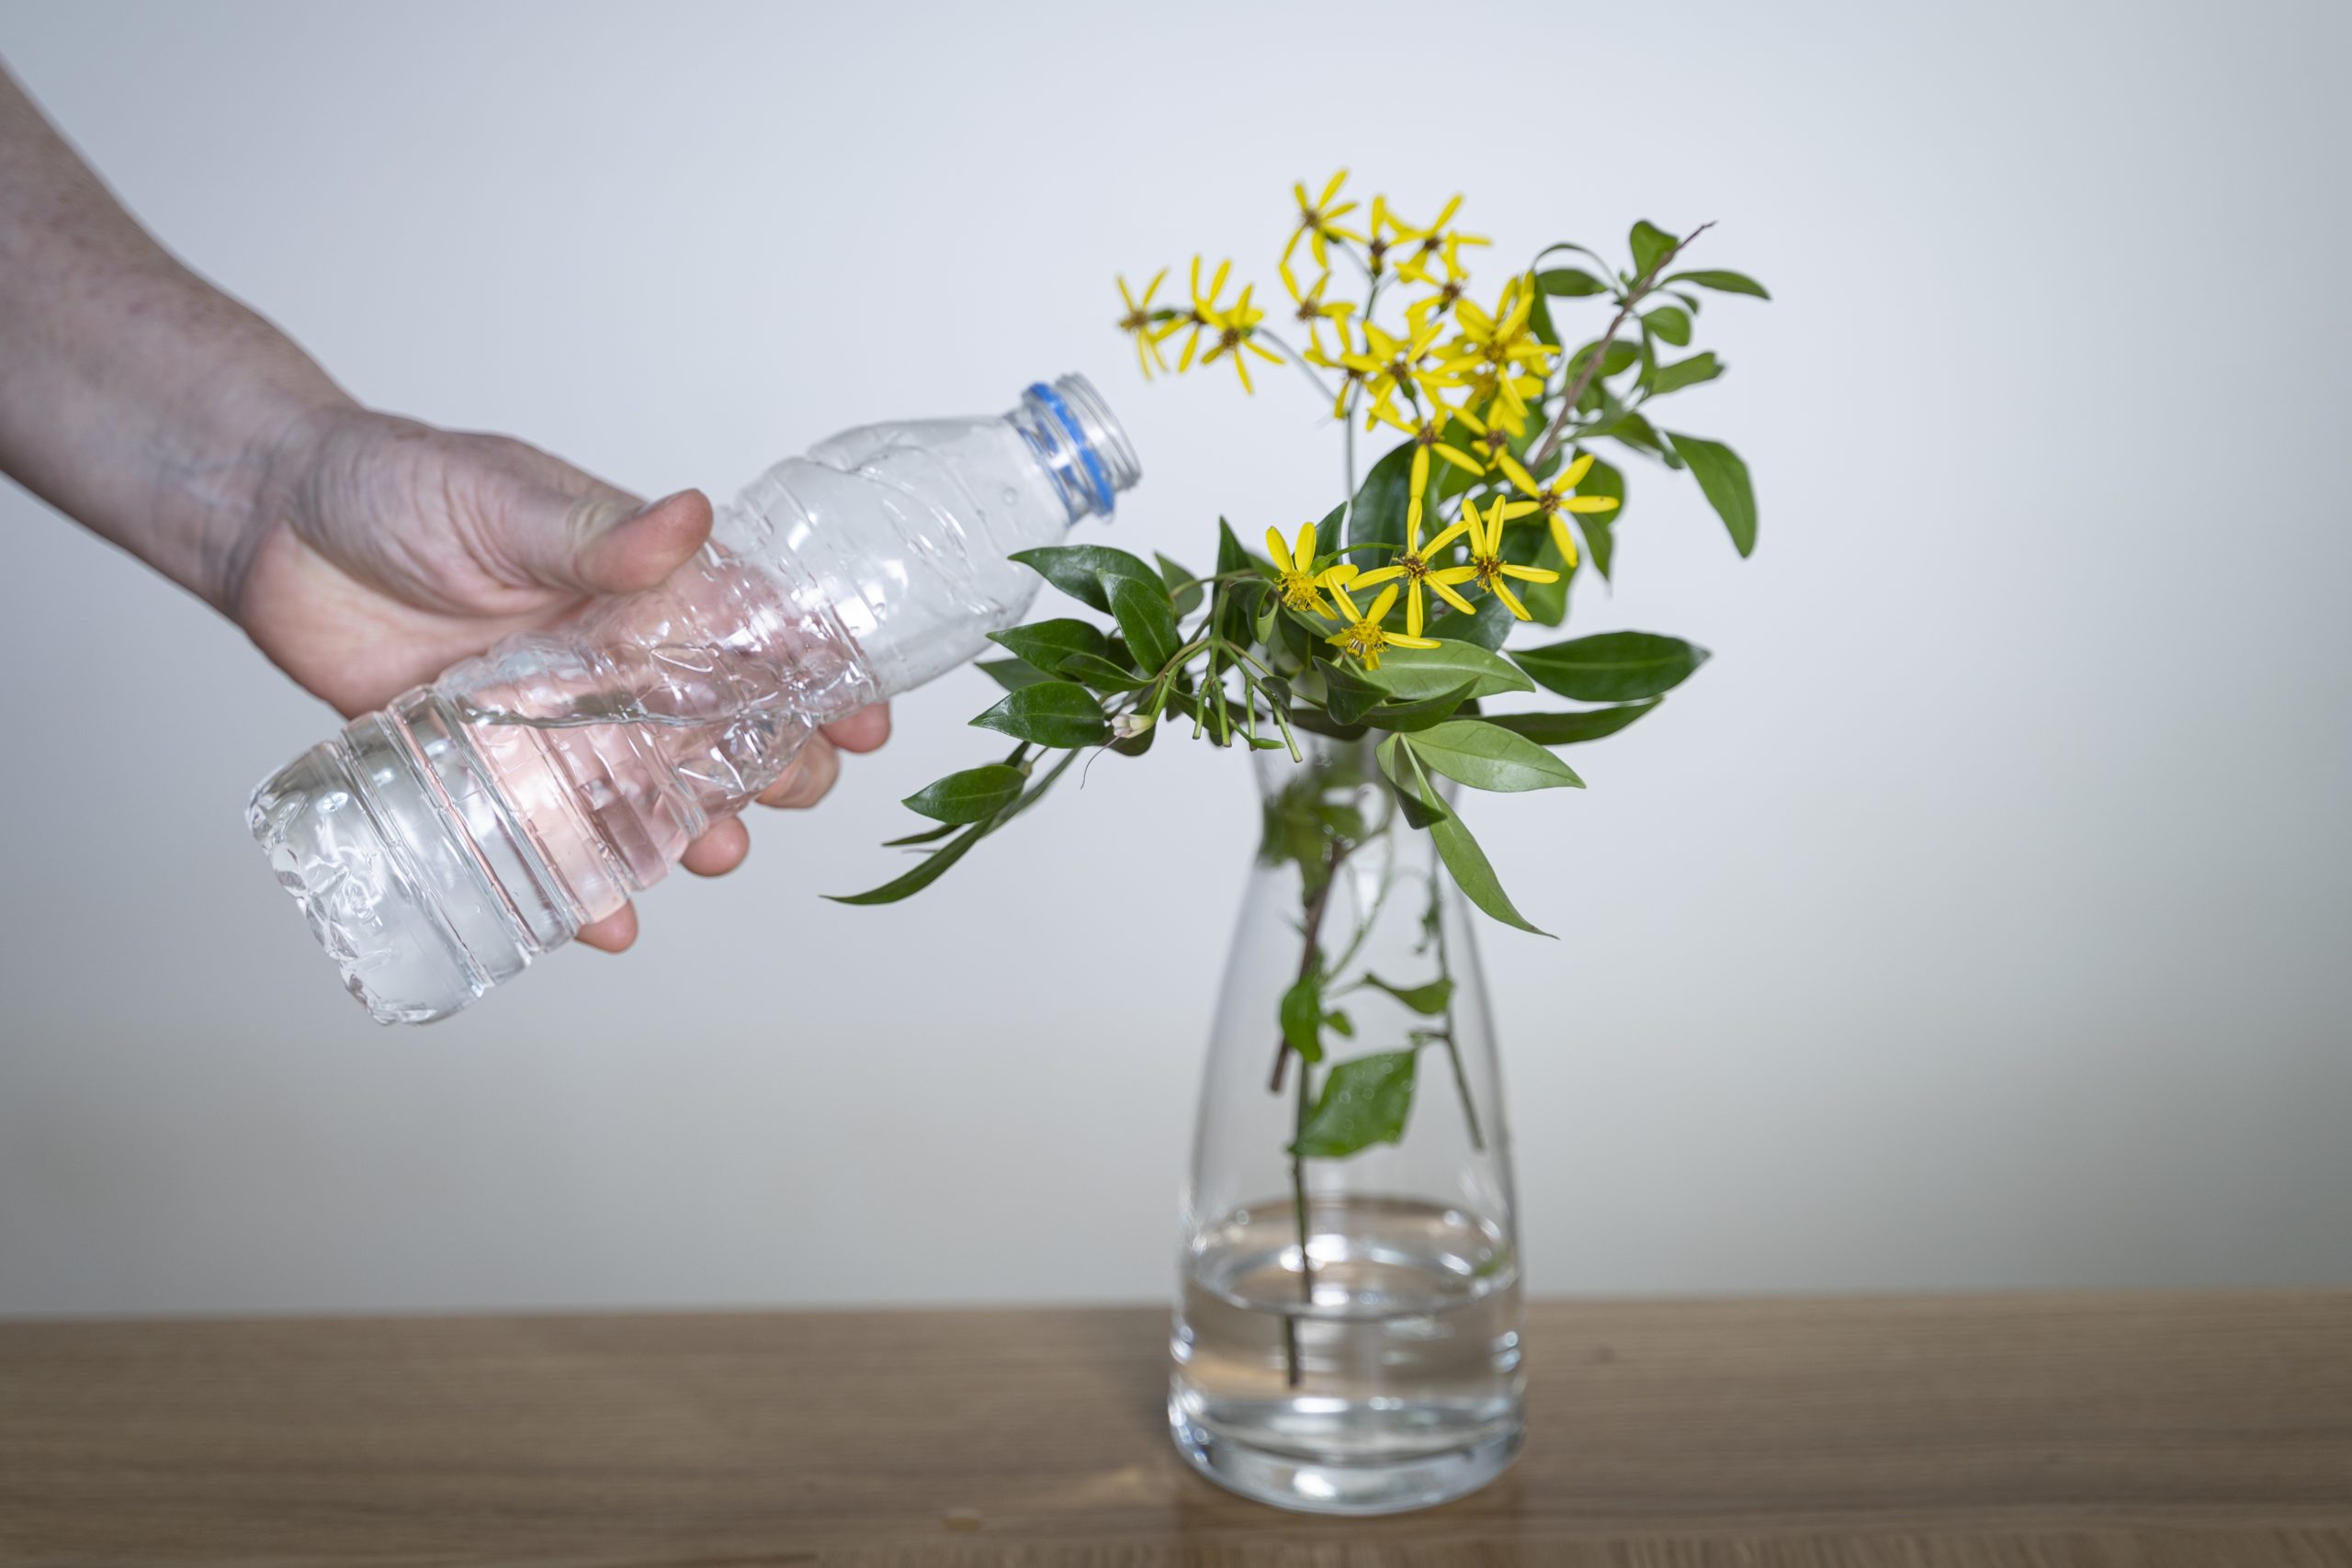 .יד שופכת מים מבקבוק לתוך אגרטל פרחים שמלא במעט מים. האגרטל מונח על שולחן